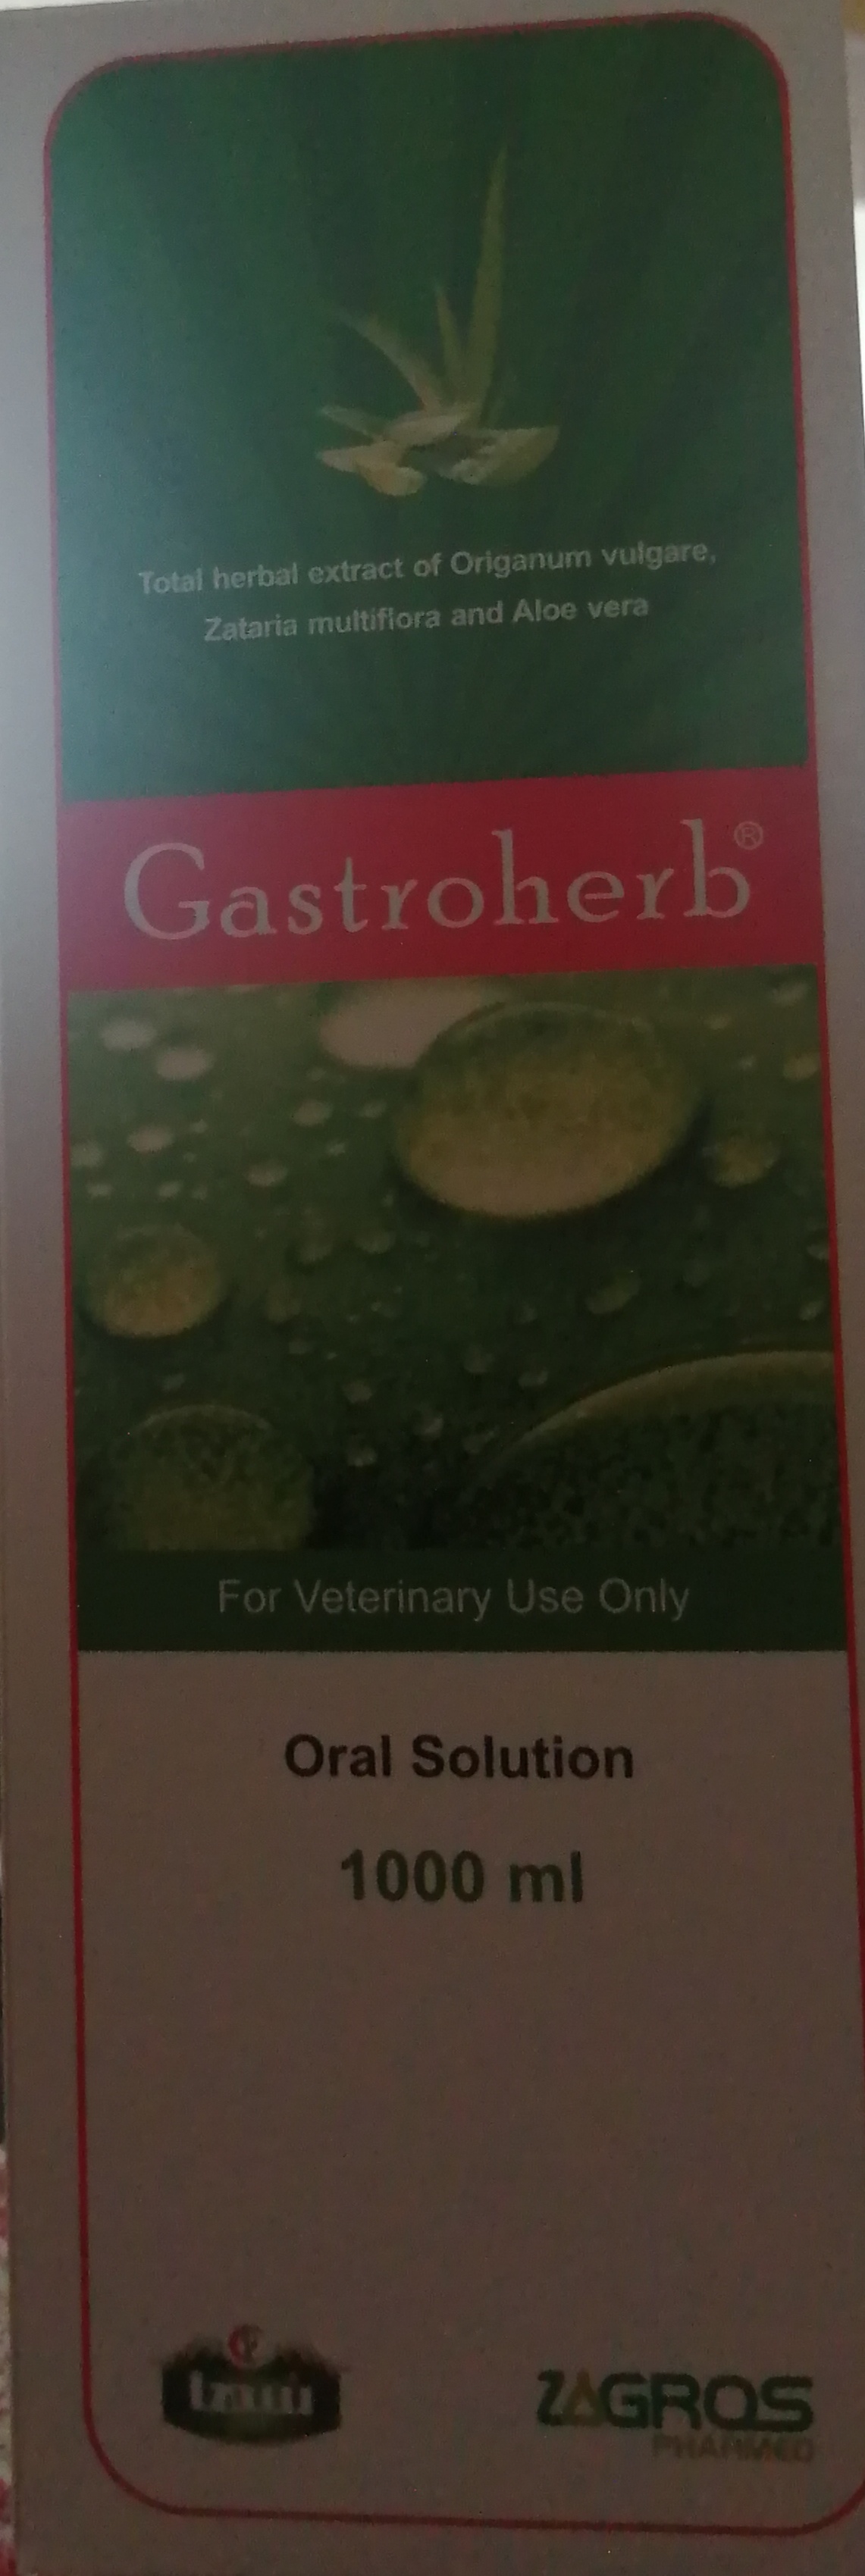 Gasteroherb